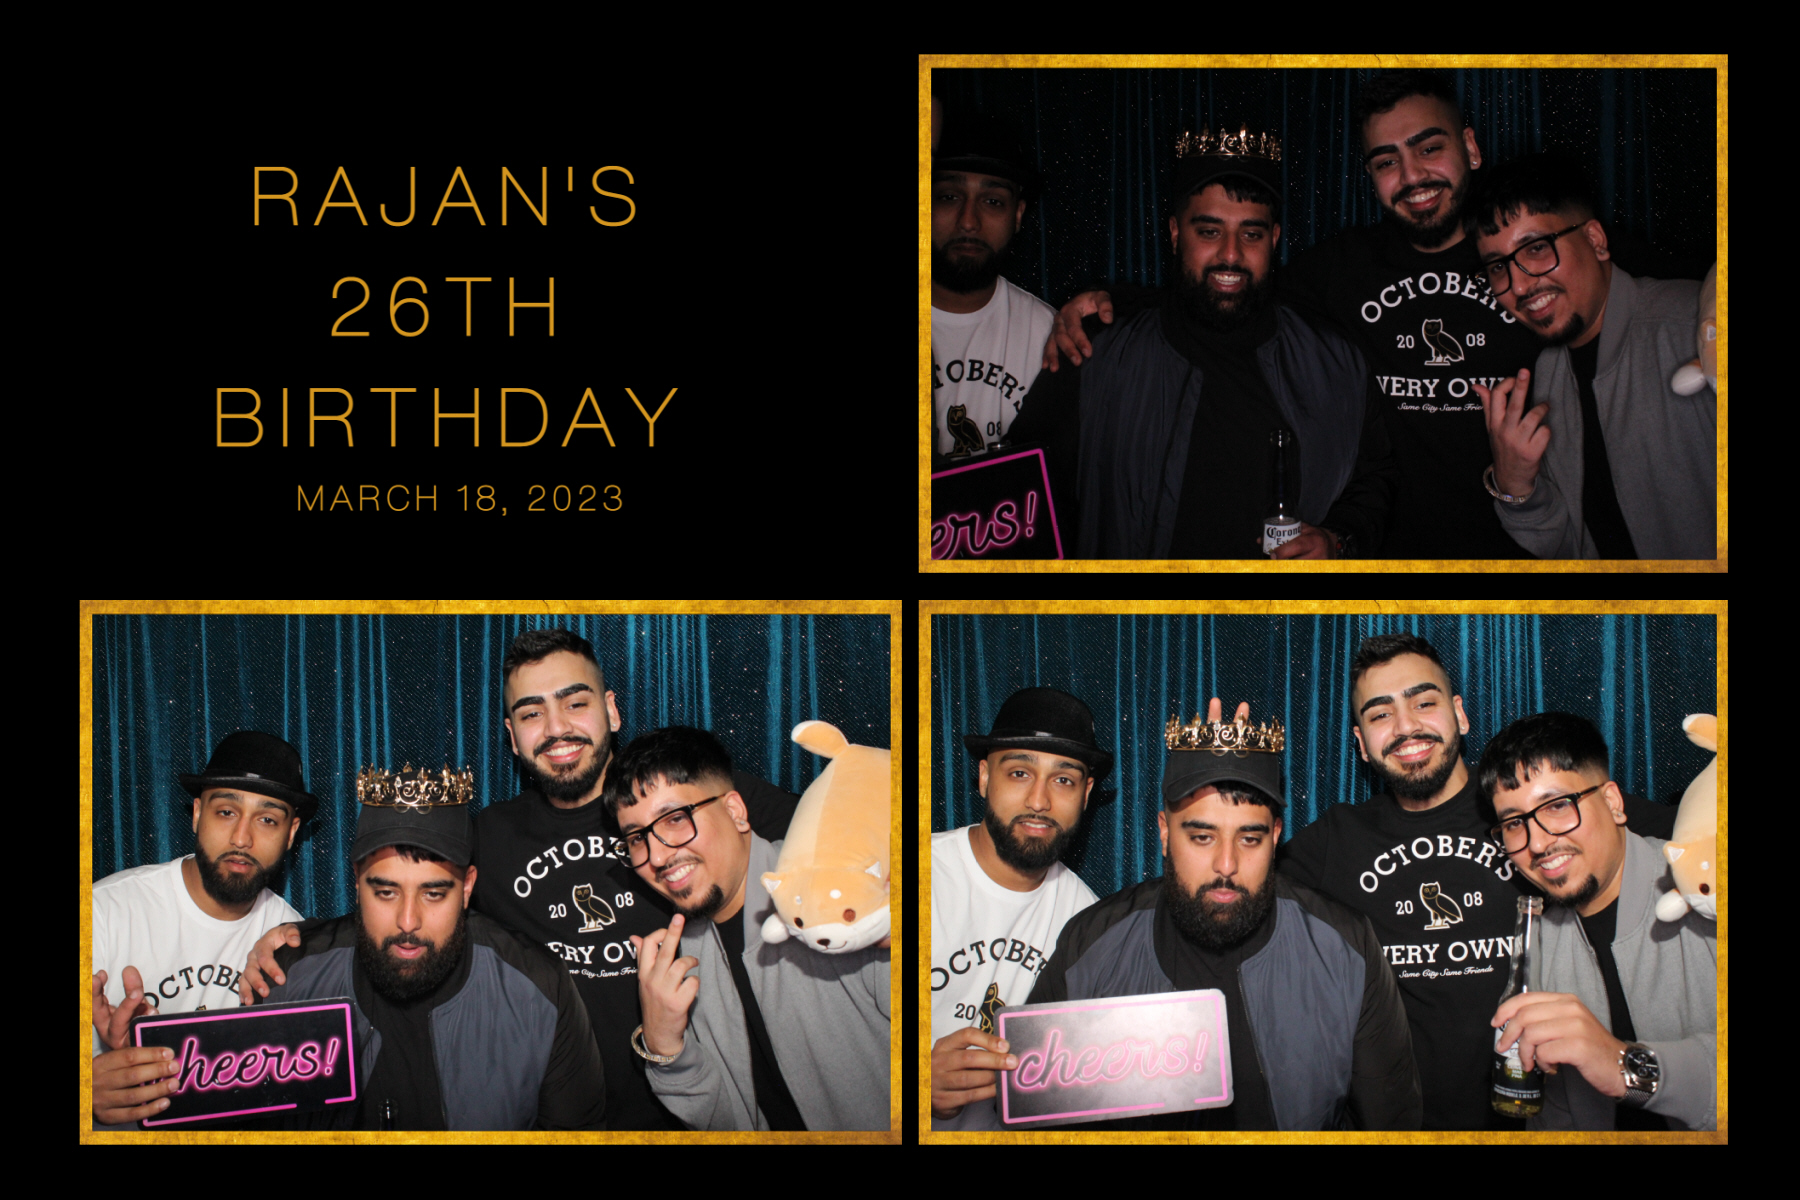 Rajan_s Birthday_14